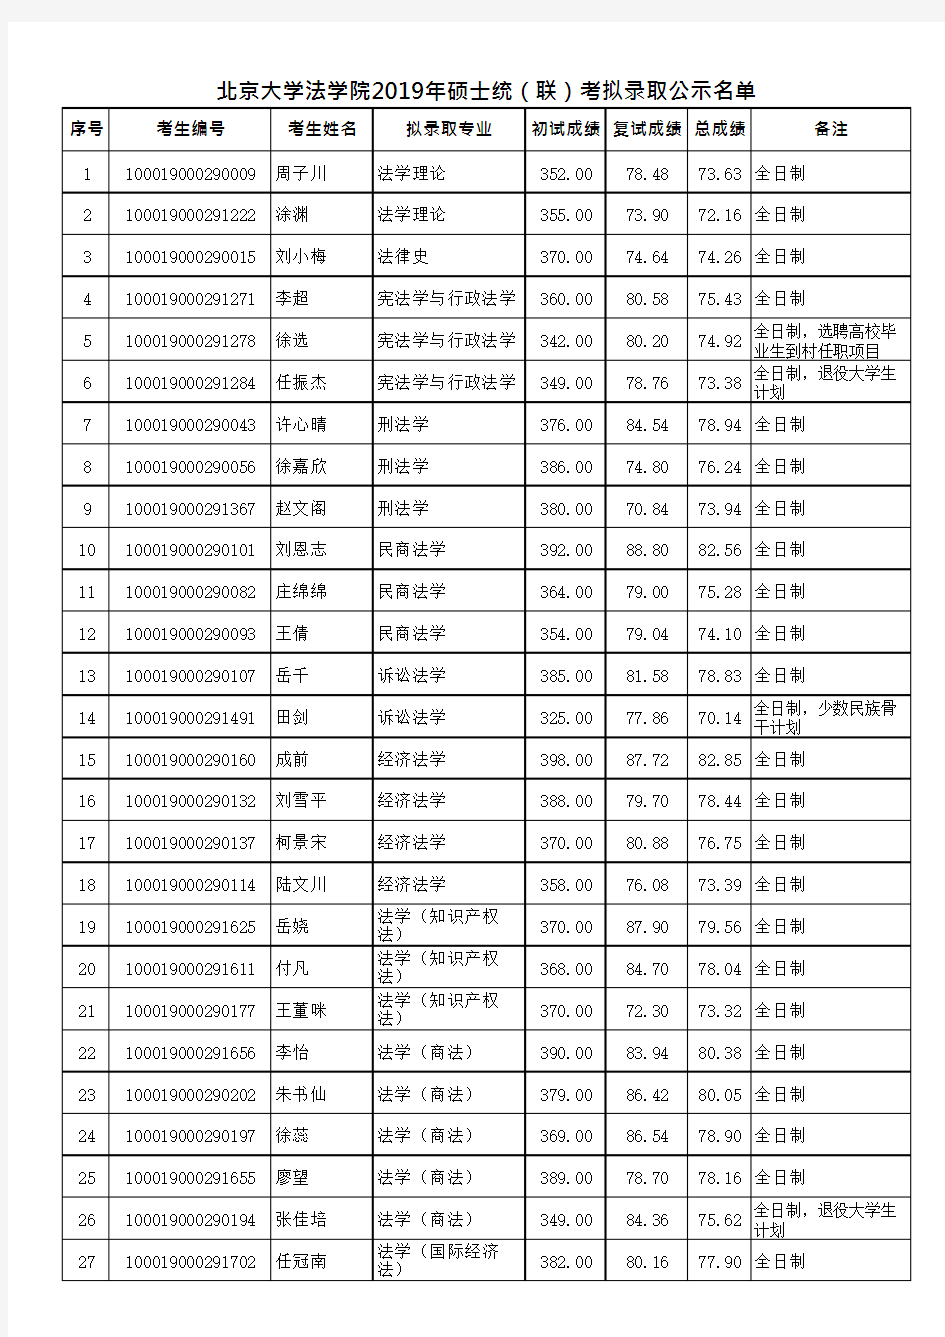 北京大学法学院2019年硕士统(联)考拟录取公示名单